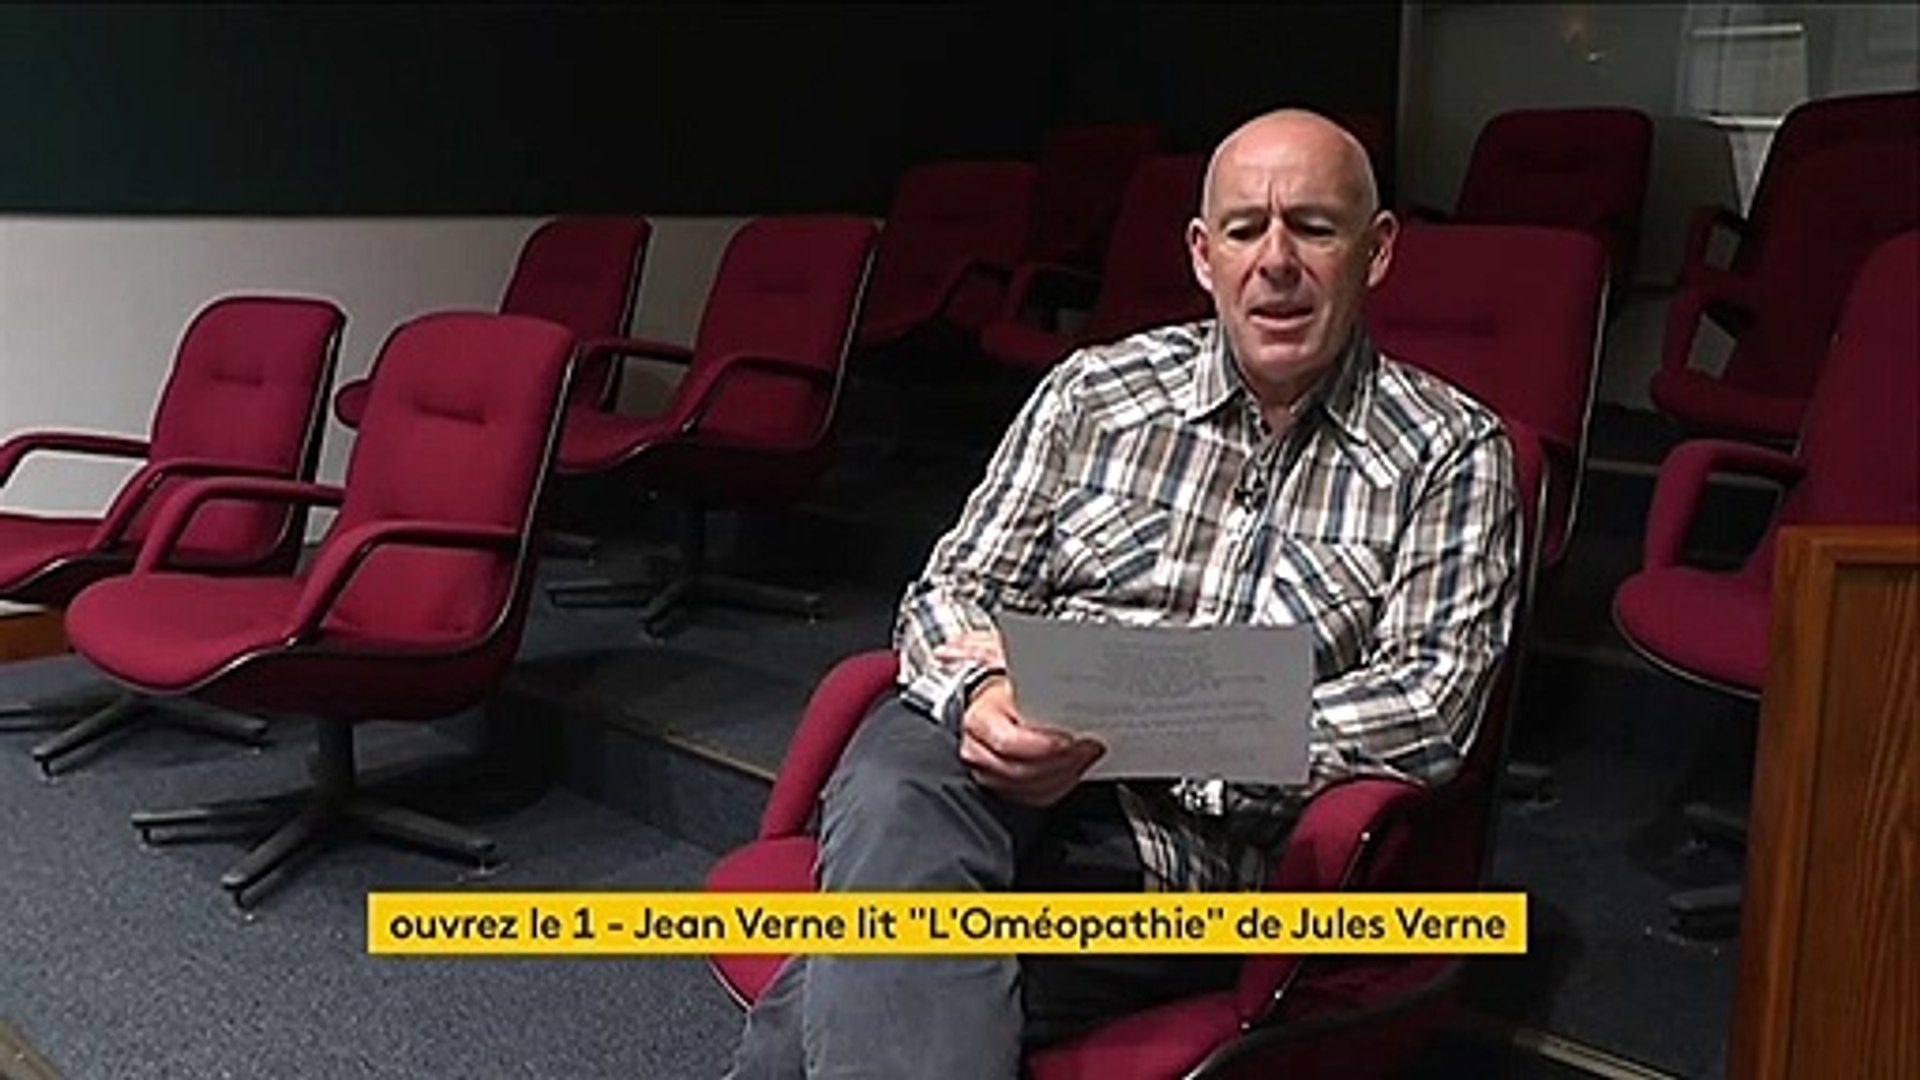 Jean Verne, arrière-petit-fils de Jules Verne, lit "L'Oméopathie", un poème  de son aïeul - Vidéo Dailymotion